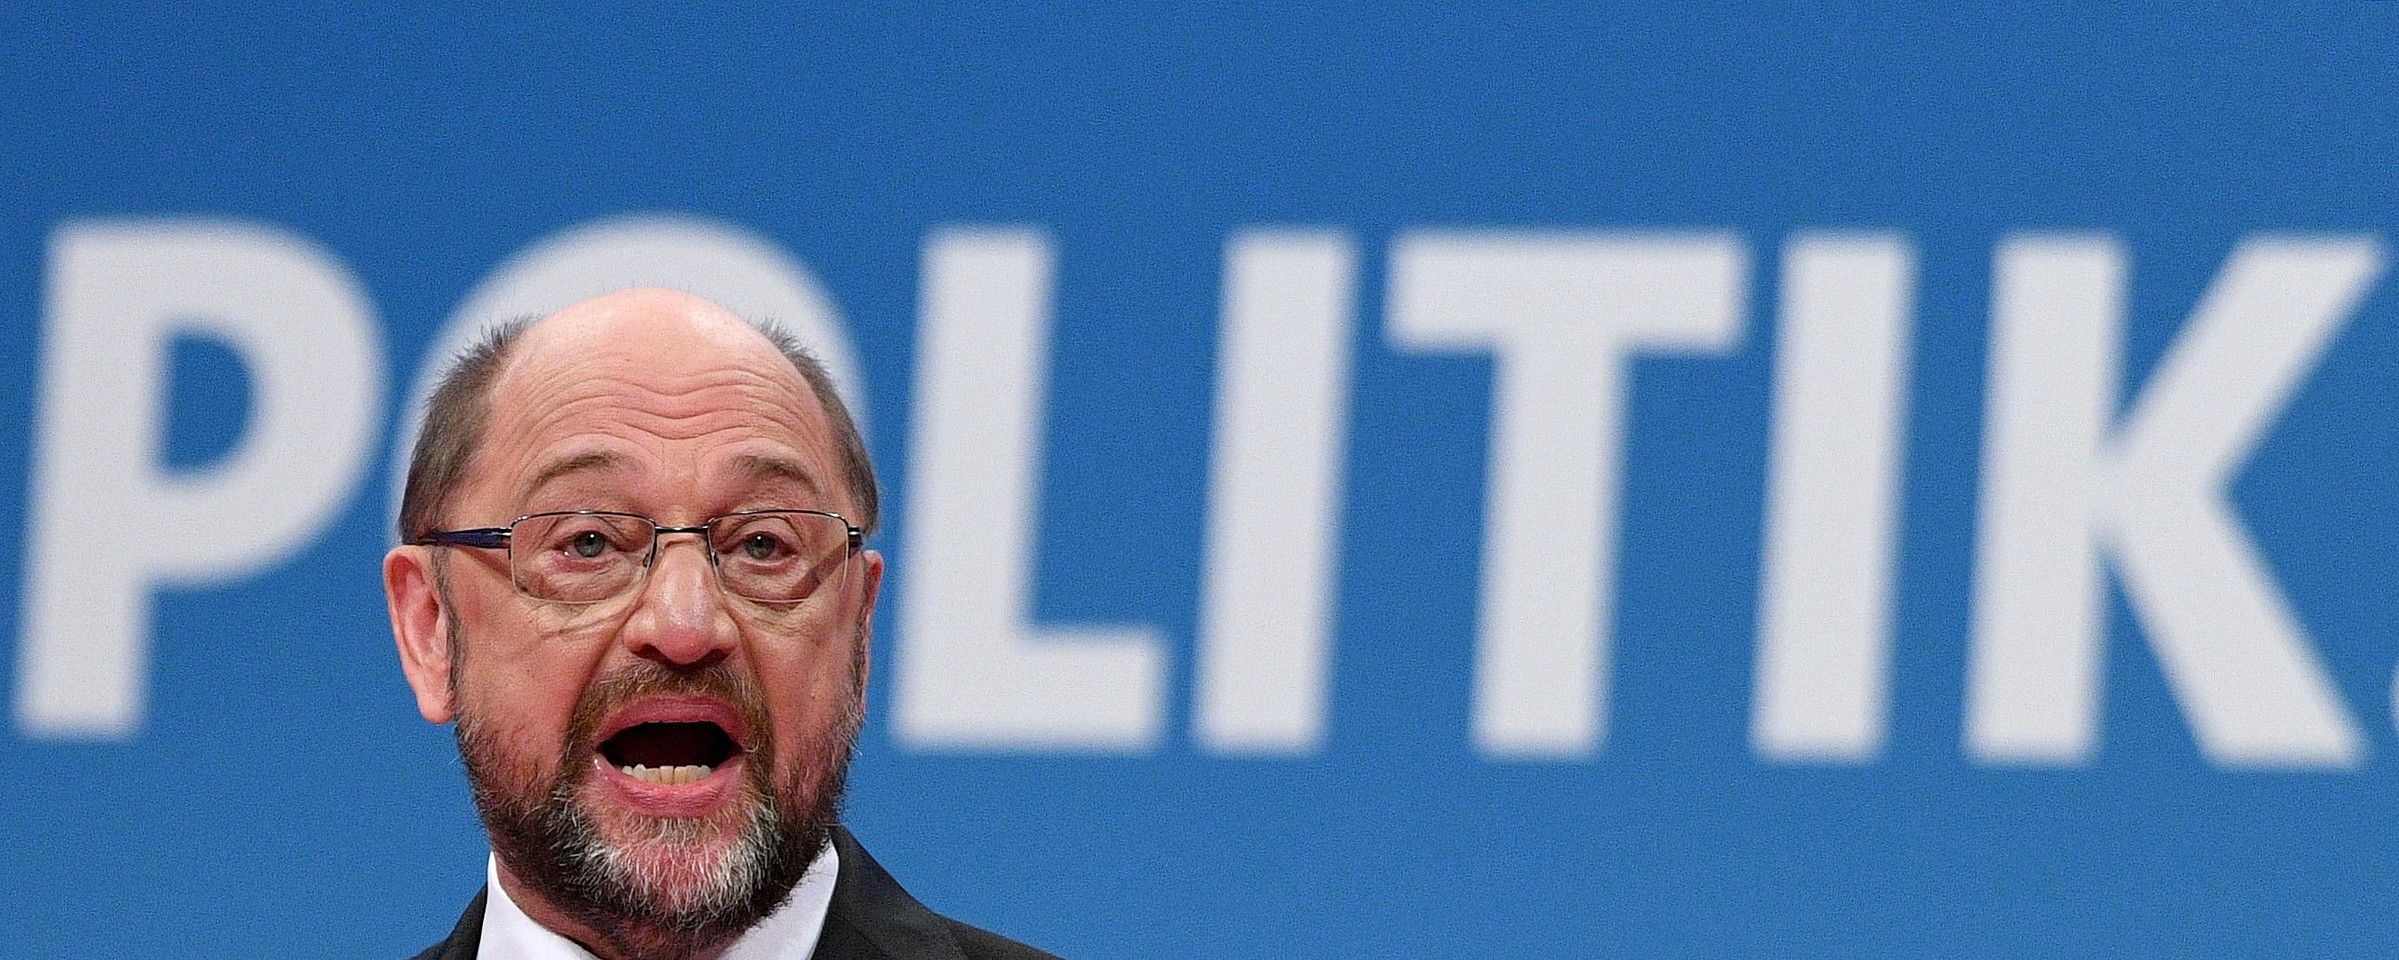 Martin Schulz SPDko lehendakaria, igandean Bonnen alderdiaren ezohiko batzarrean emandako hitzaldian. SASCHA STEINBACH / EFE.